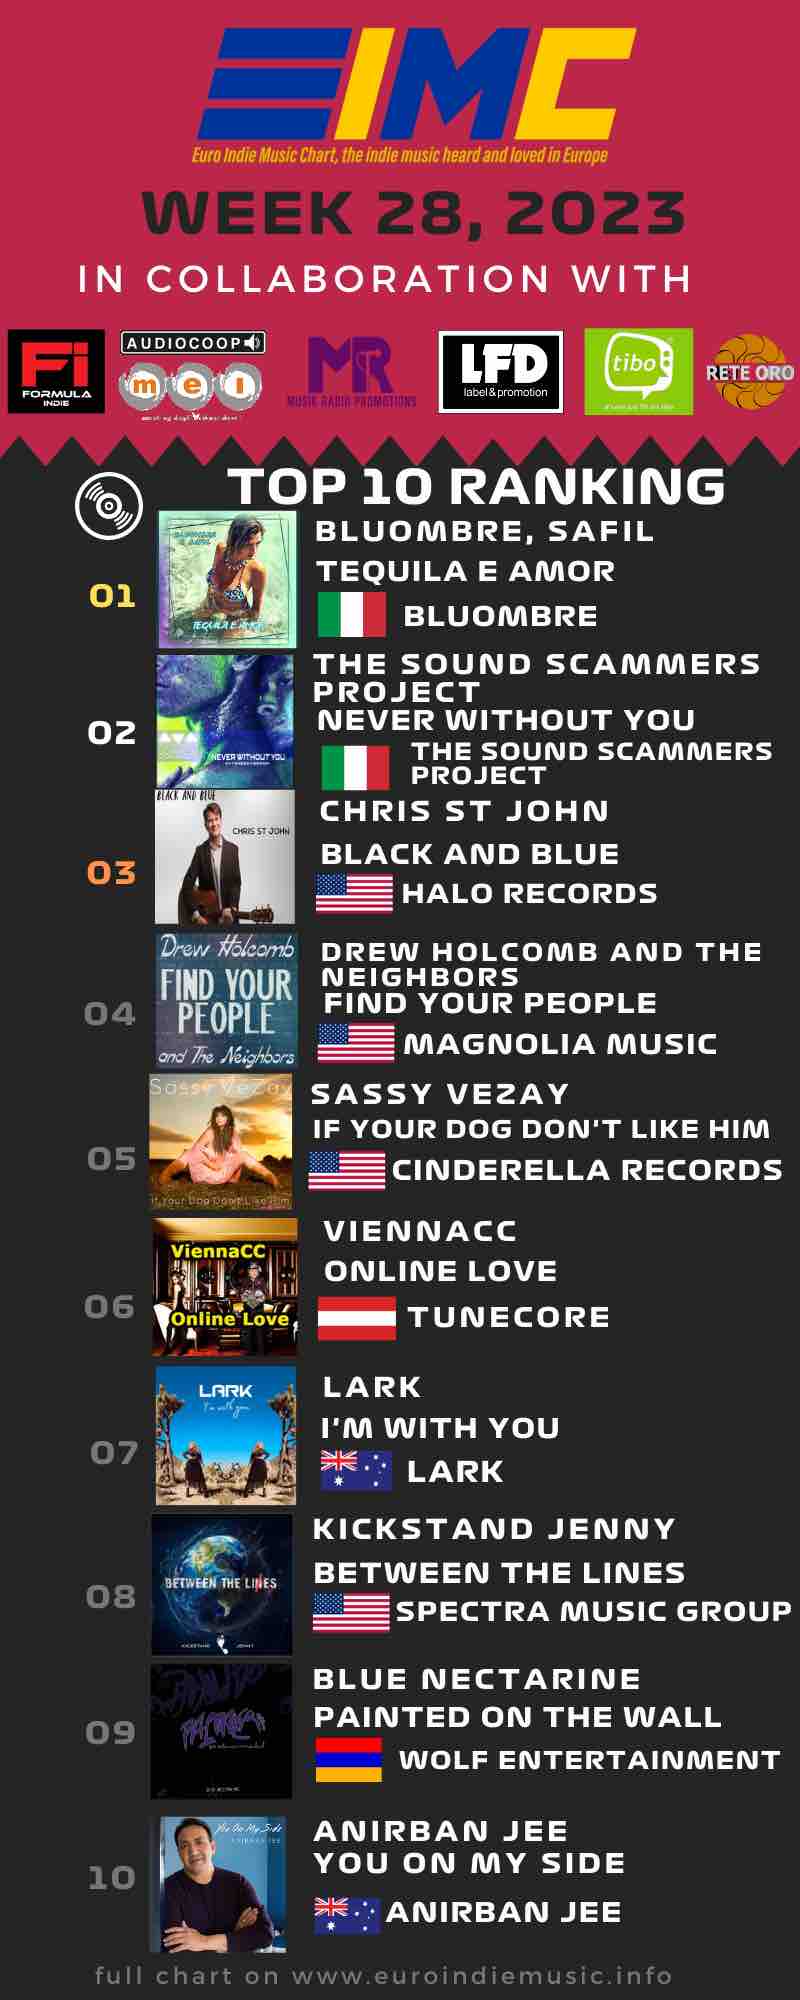 Nuova Euro Indie Music Chart: Questa settimana al primo posto della classifica troviamo Bluombre e Safil con Tequila